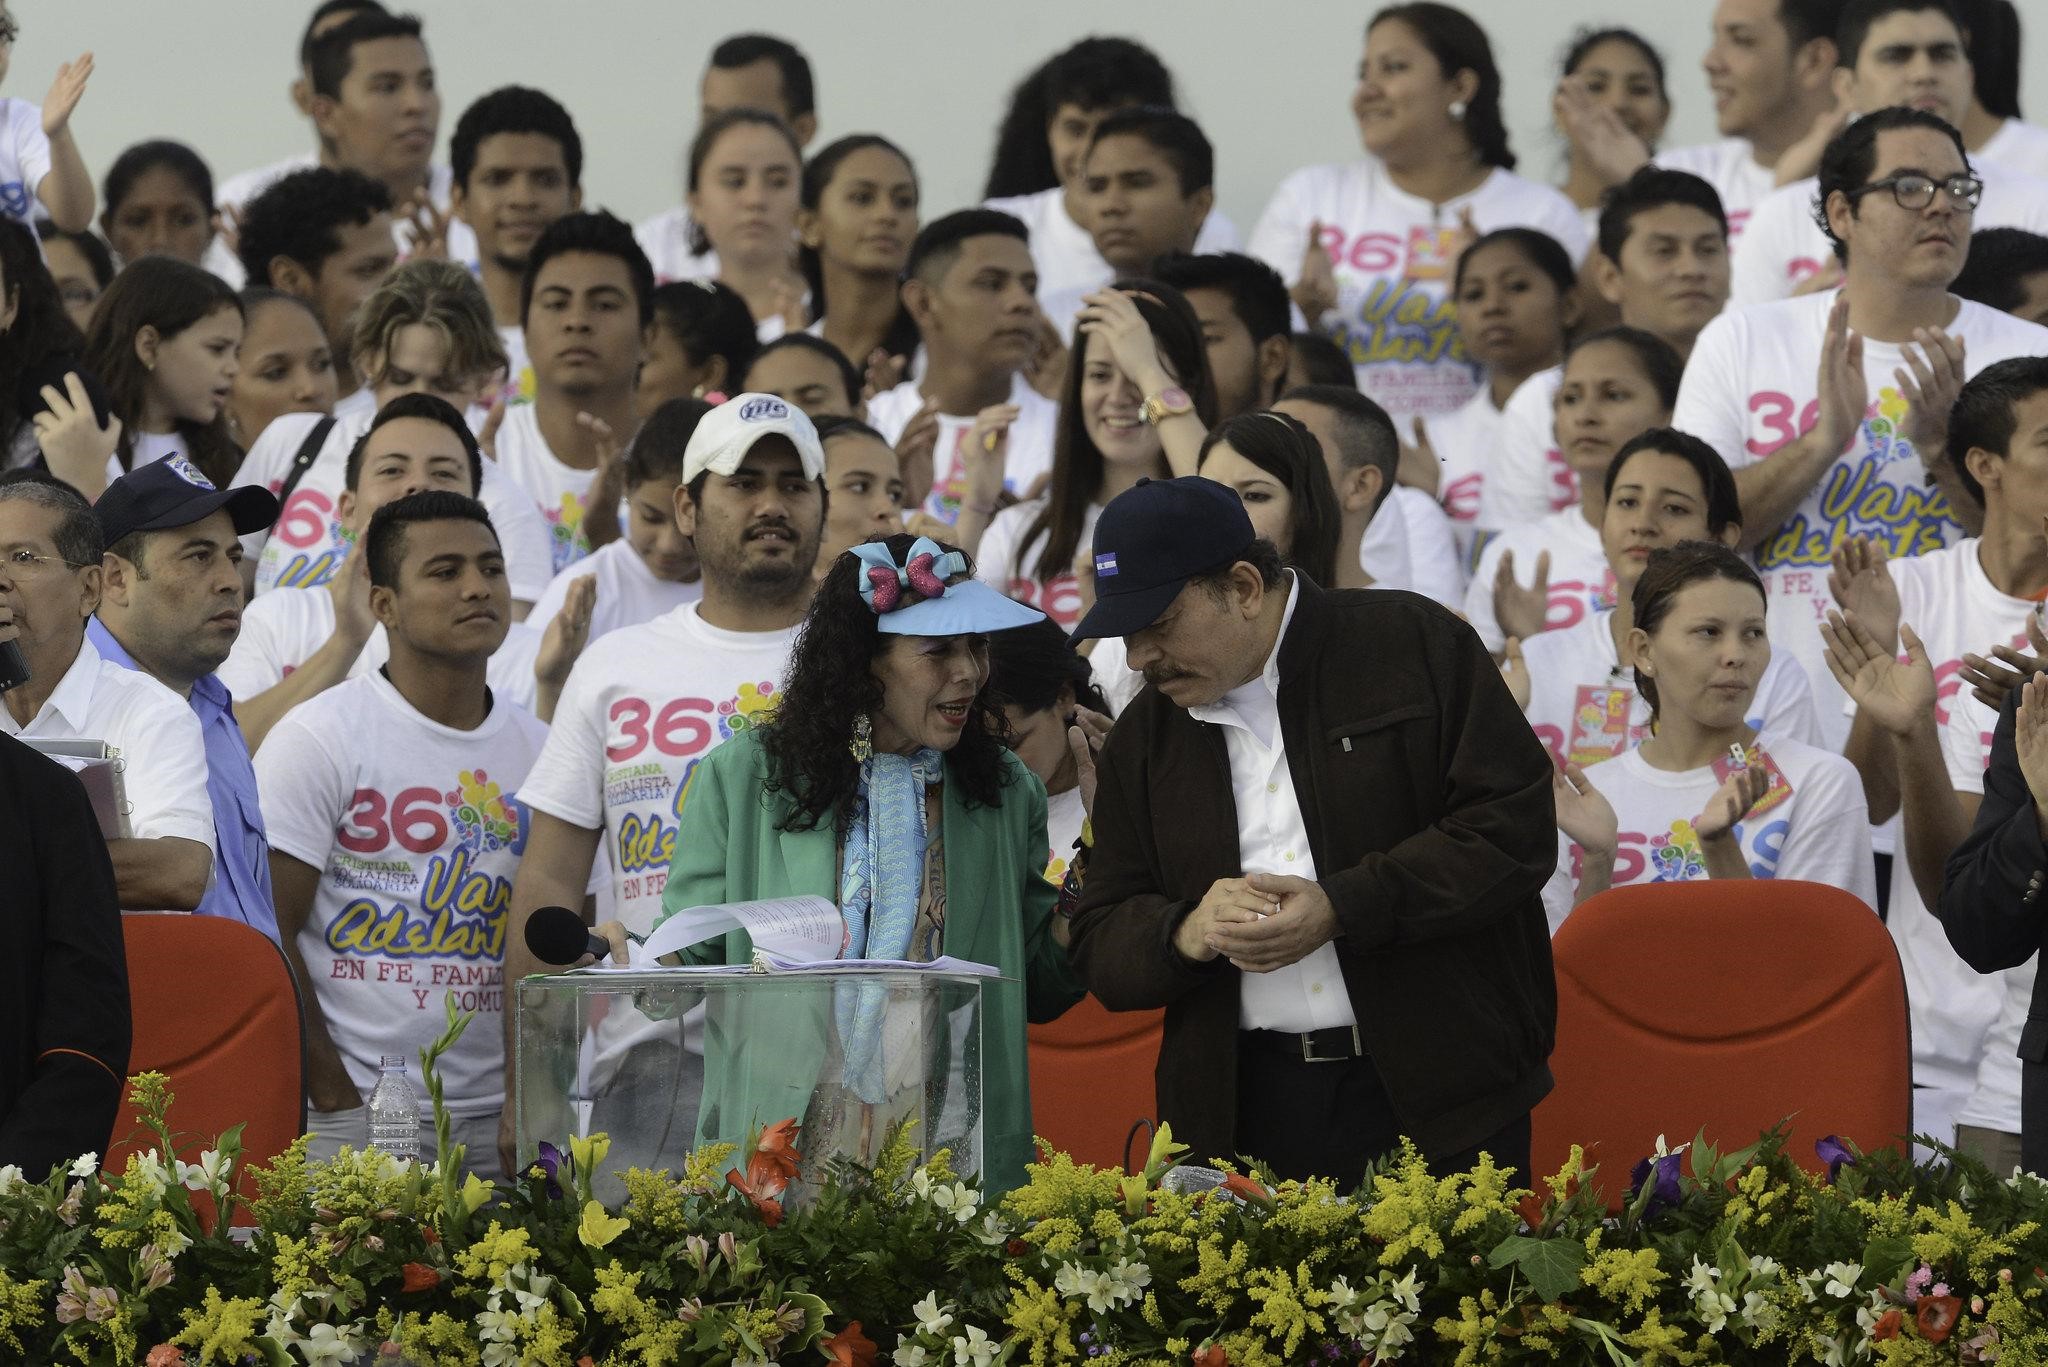 La primera dama preside todos los actos públicos del gobierno y el sandinismo junto a su esposo, el mandatario Daniel Ortega. Foto: Carlos Herrera | Divergente..